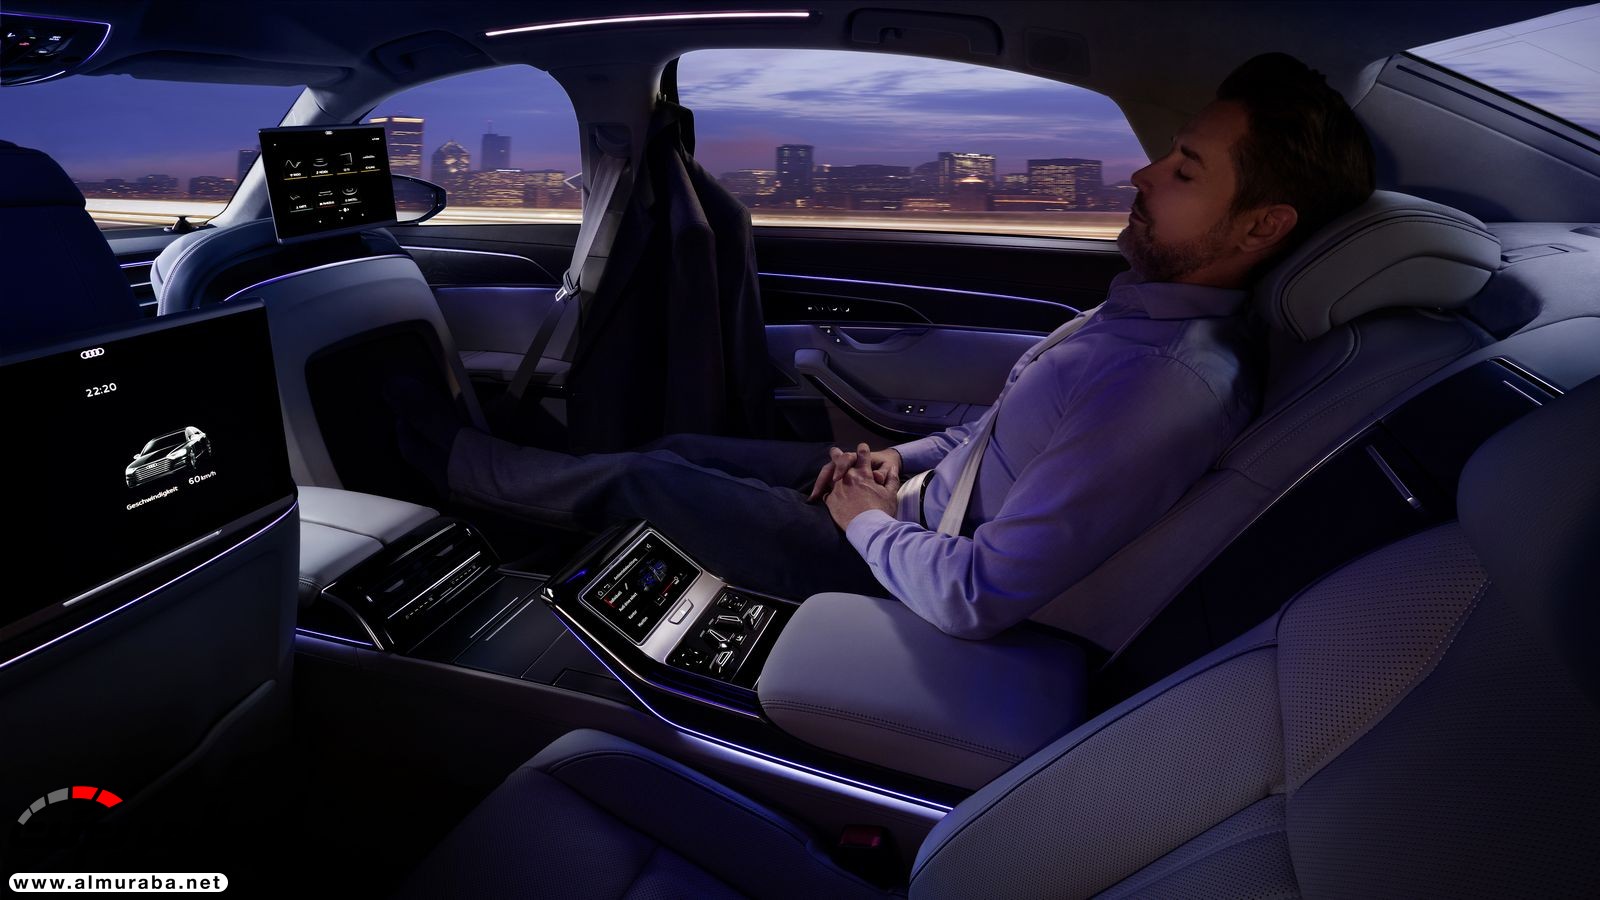 أودي A8 2018 الجديدة كلياً تكشف نفسها بتصميم وتقنيات متطورة "معلومات + 100 صورة" Audi A8 33